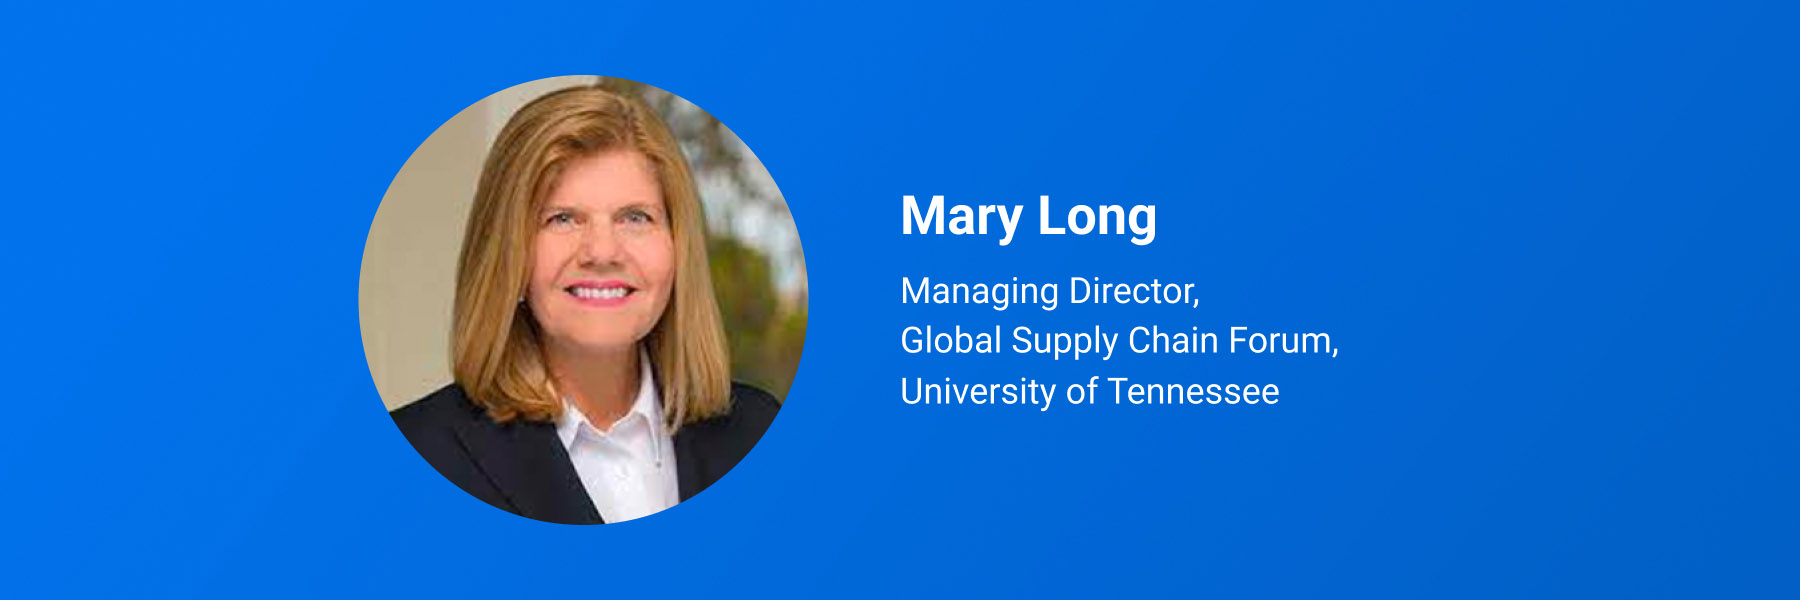 Mary Long